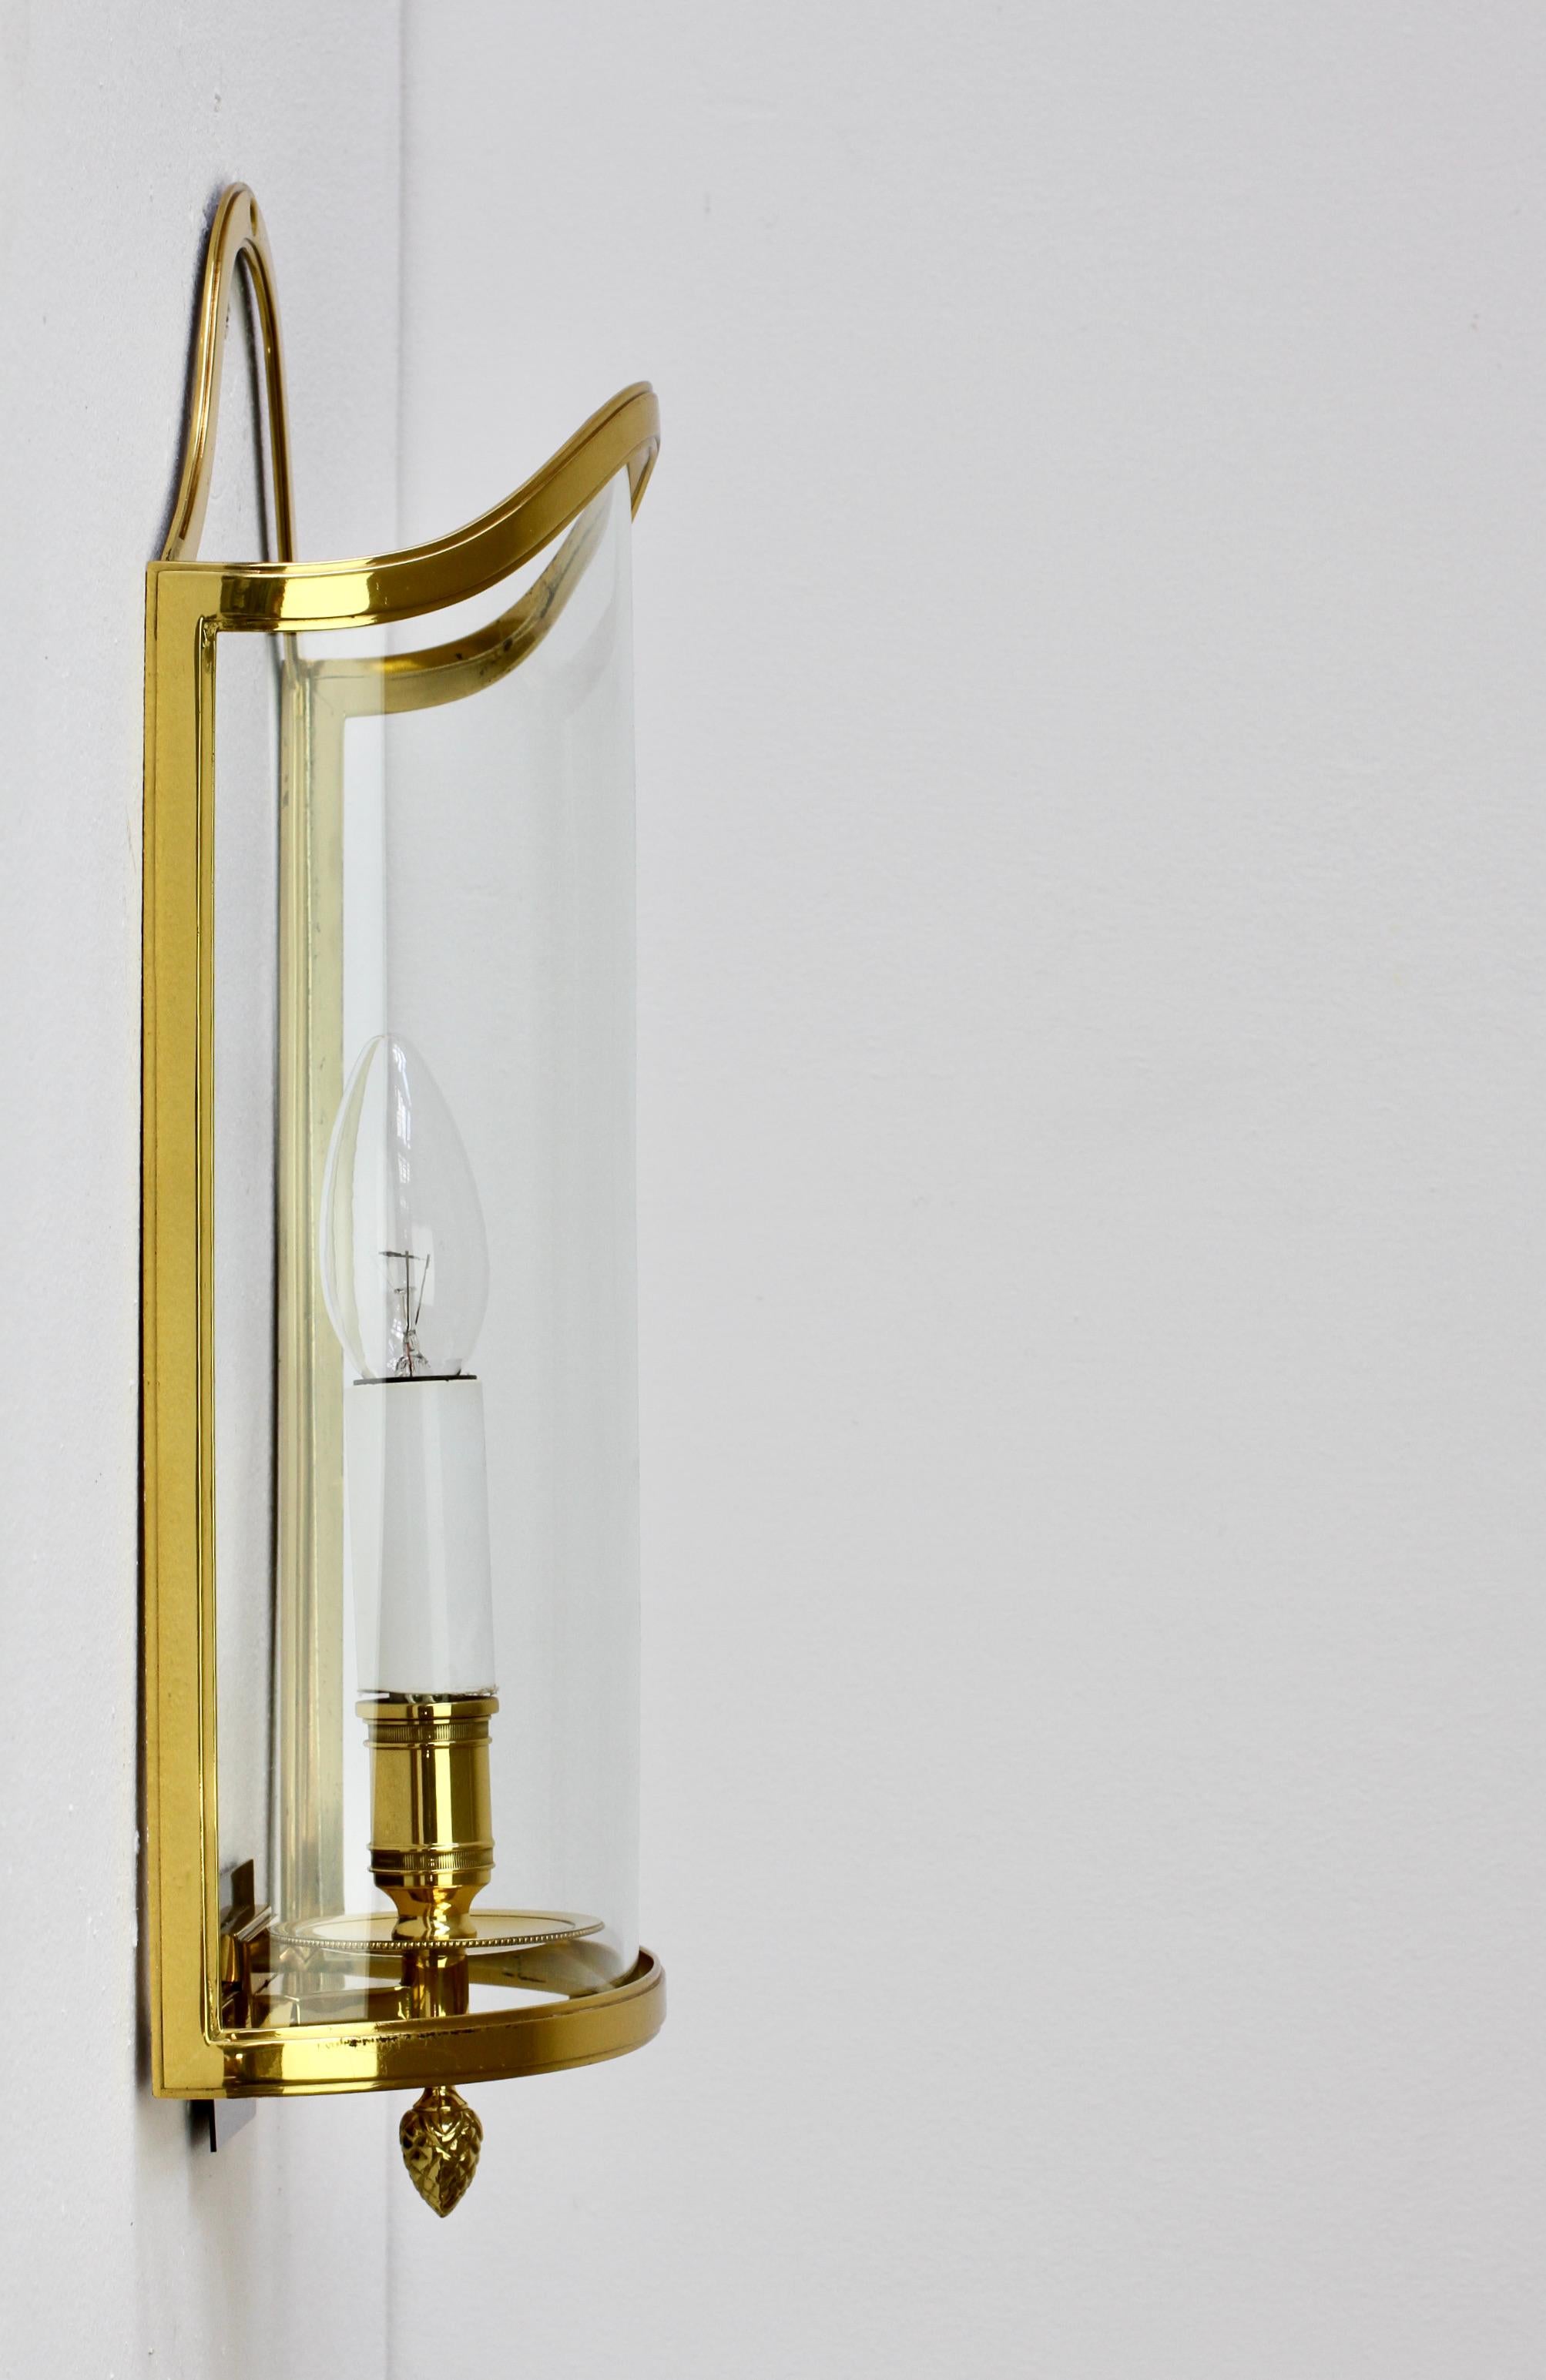 Pair of Maison Jansen Style Polished Brass Sconces by Vereinigte Werkstätten For Sale 3